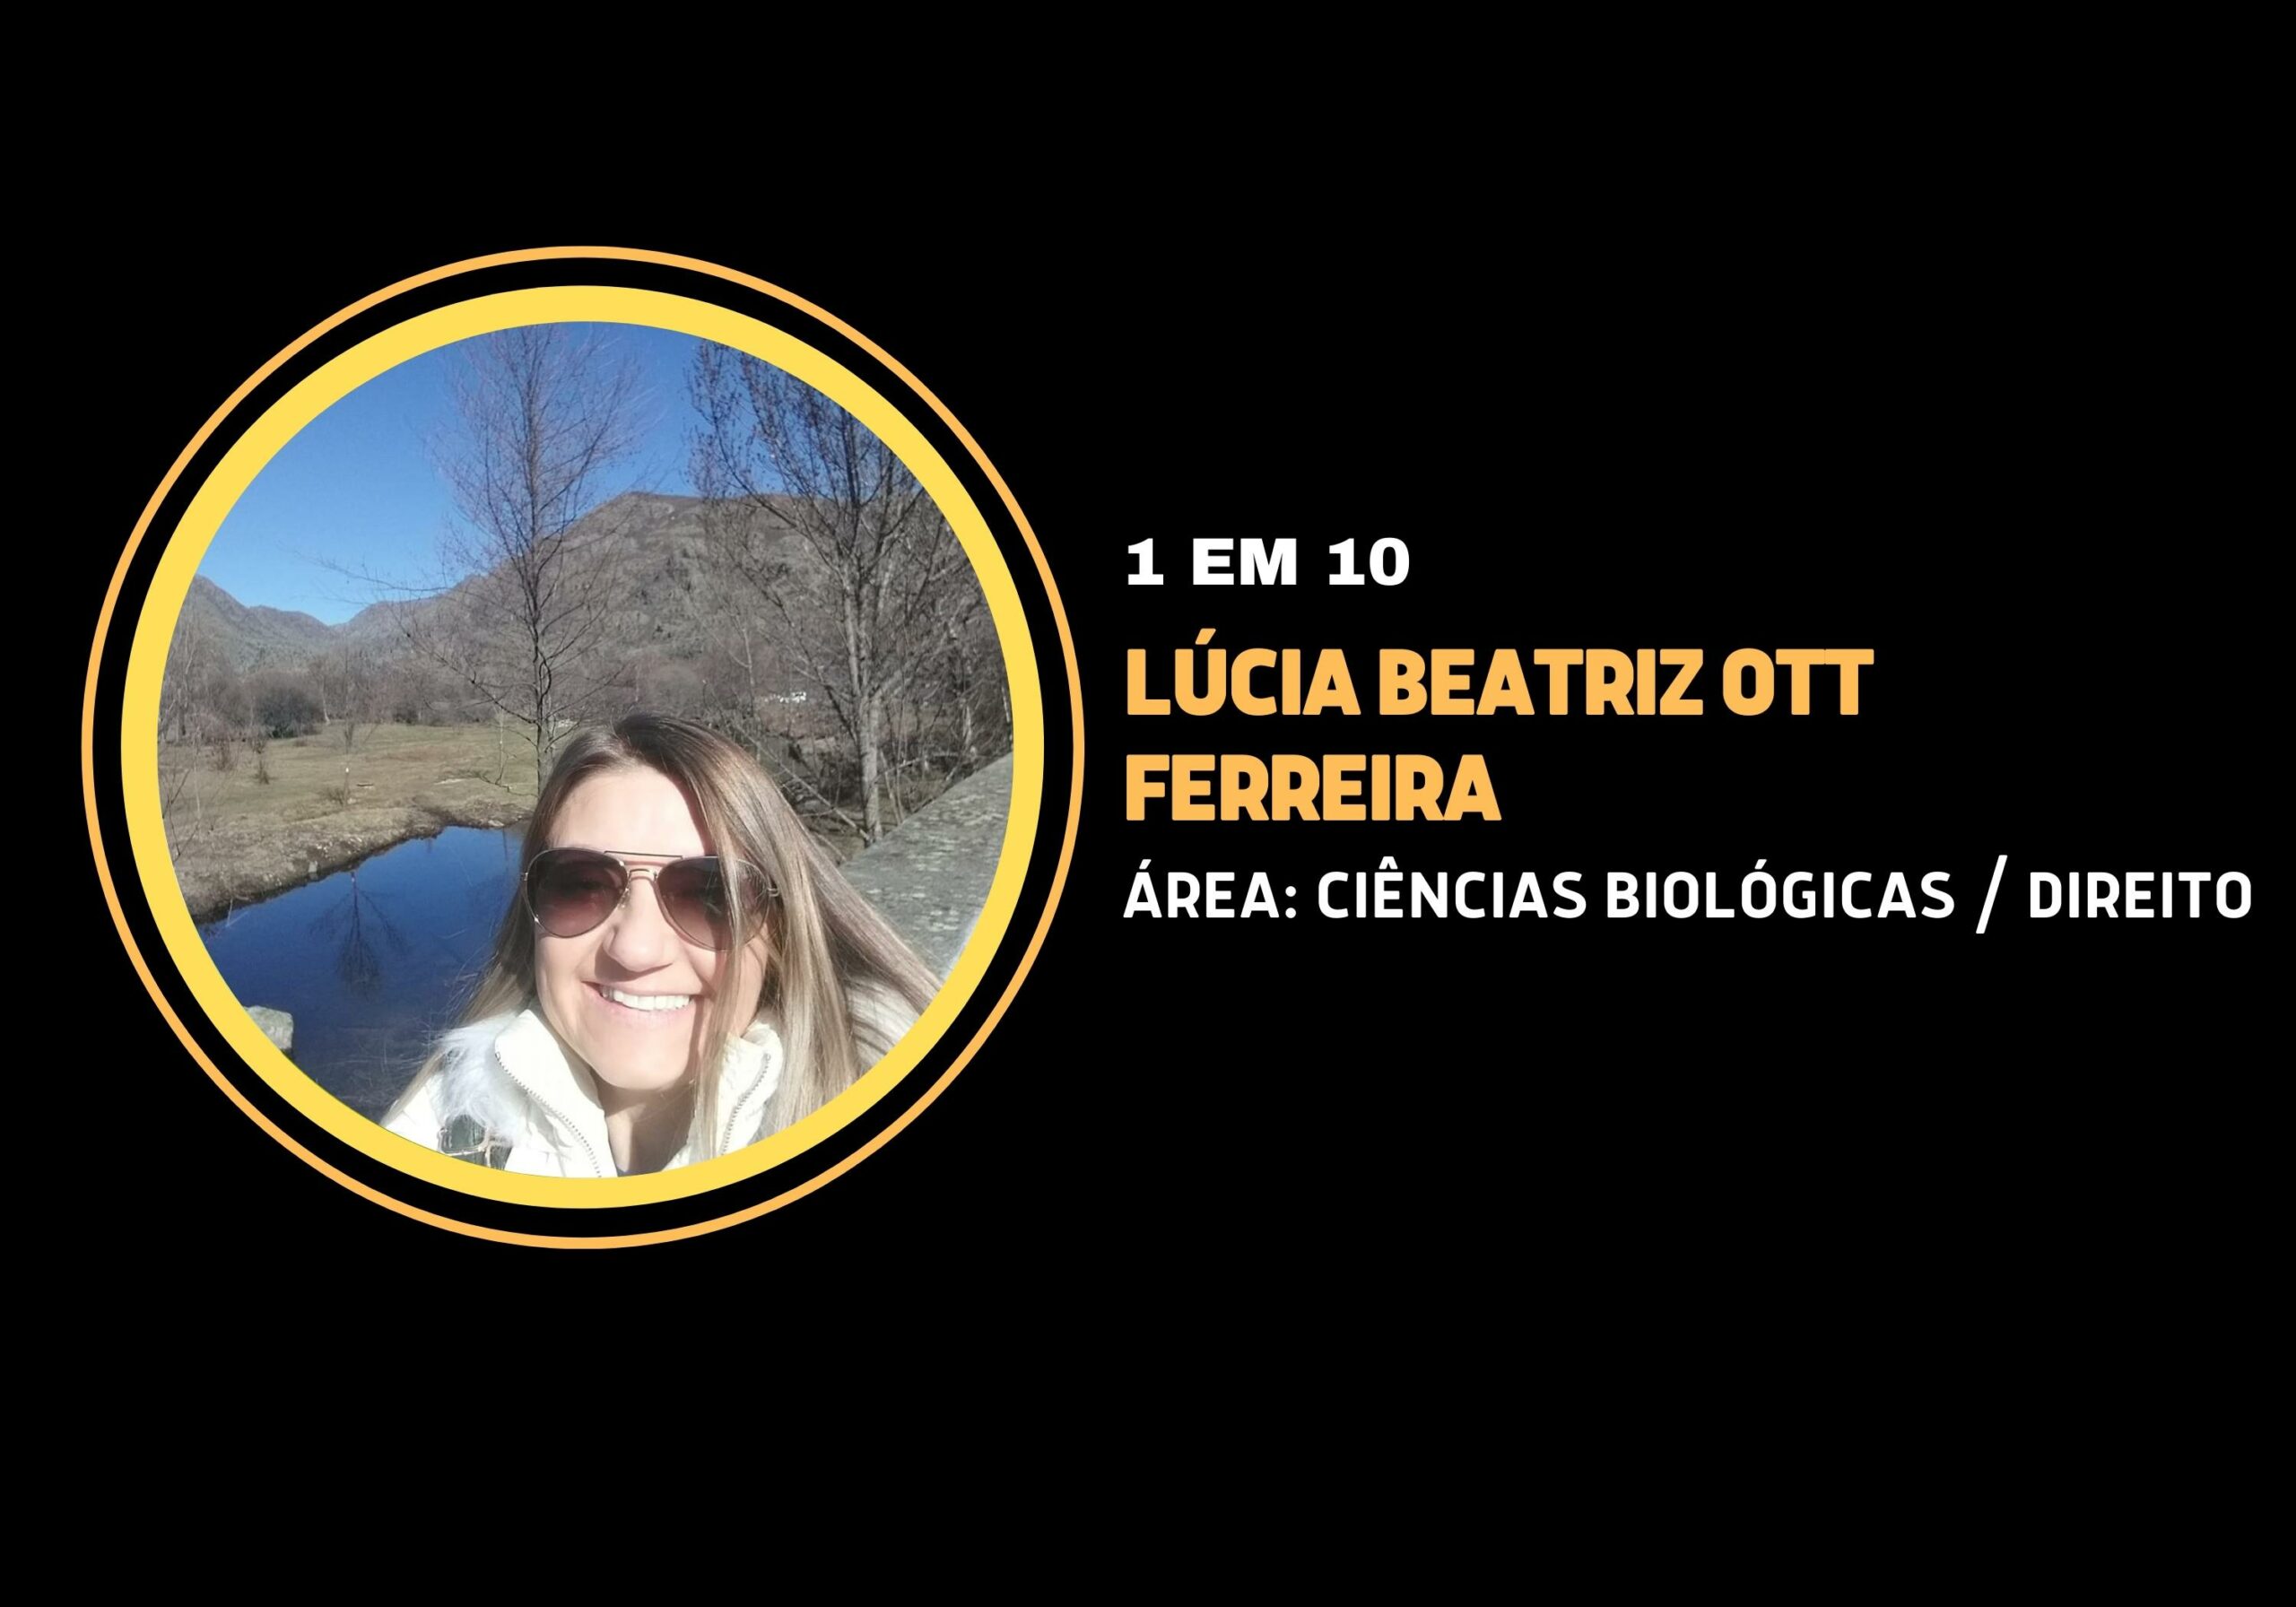 Lúcia Beatriz Ott Ferreira | 1 em 10